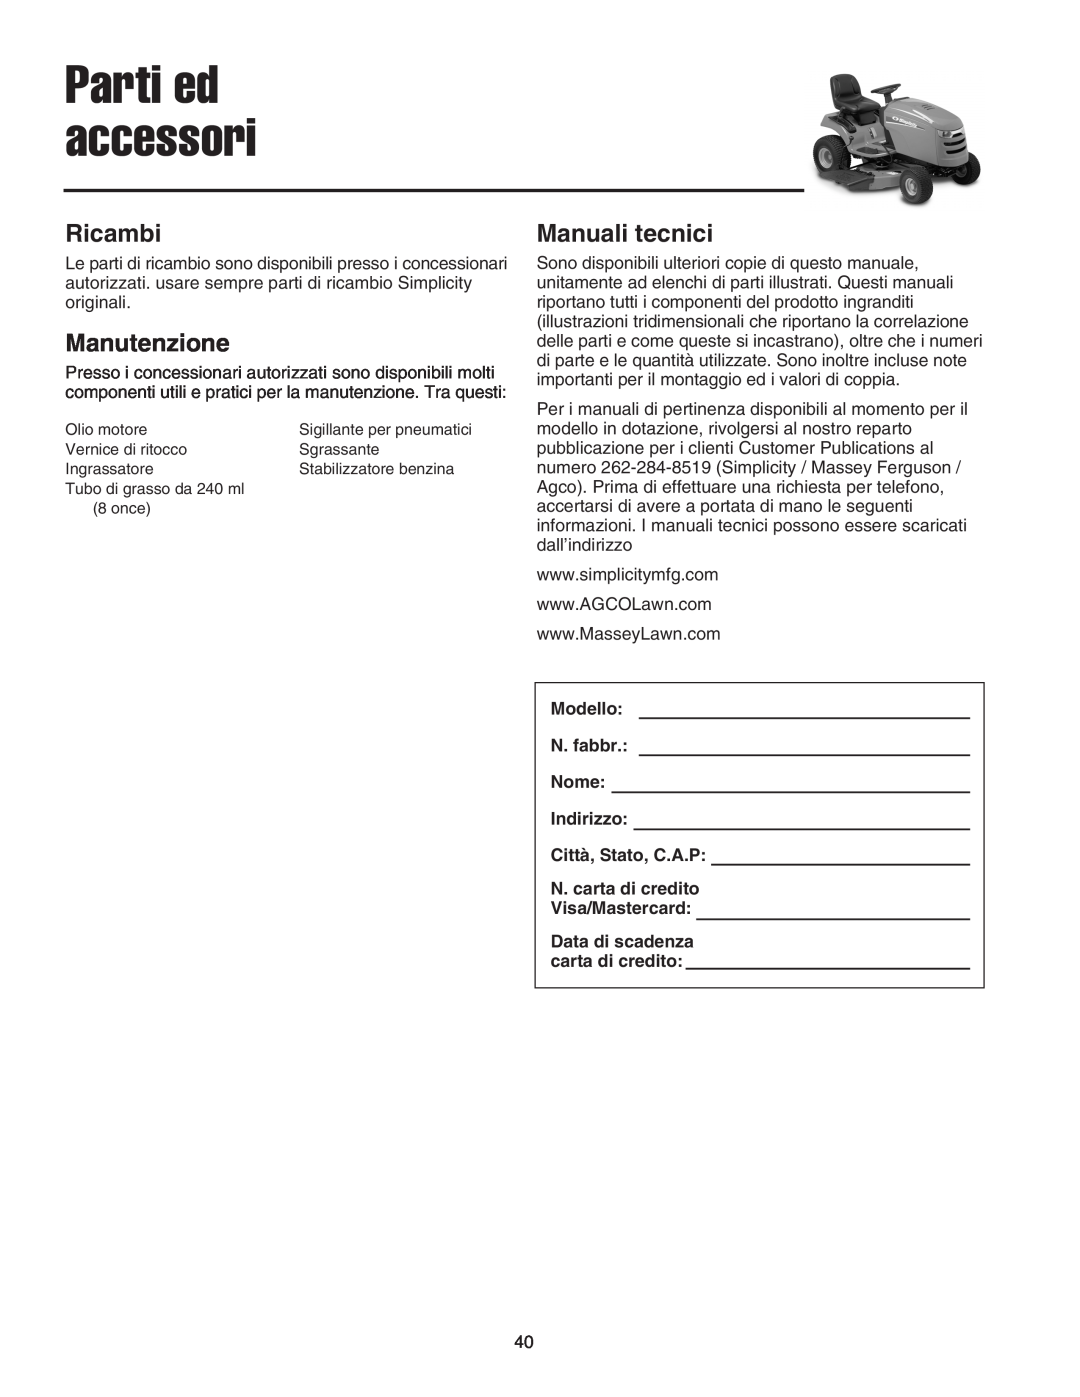 Briggs & Stratton Printer instruction sheet Ricambi, Manutenzione, Manuali tecnici, Parti ed accessori 